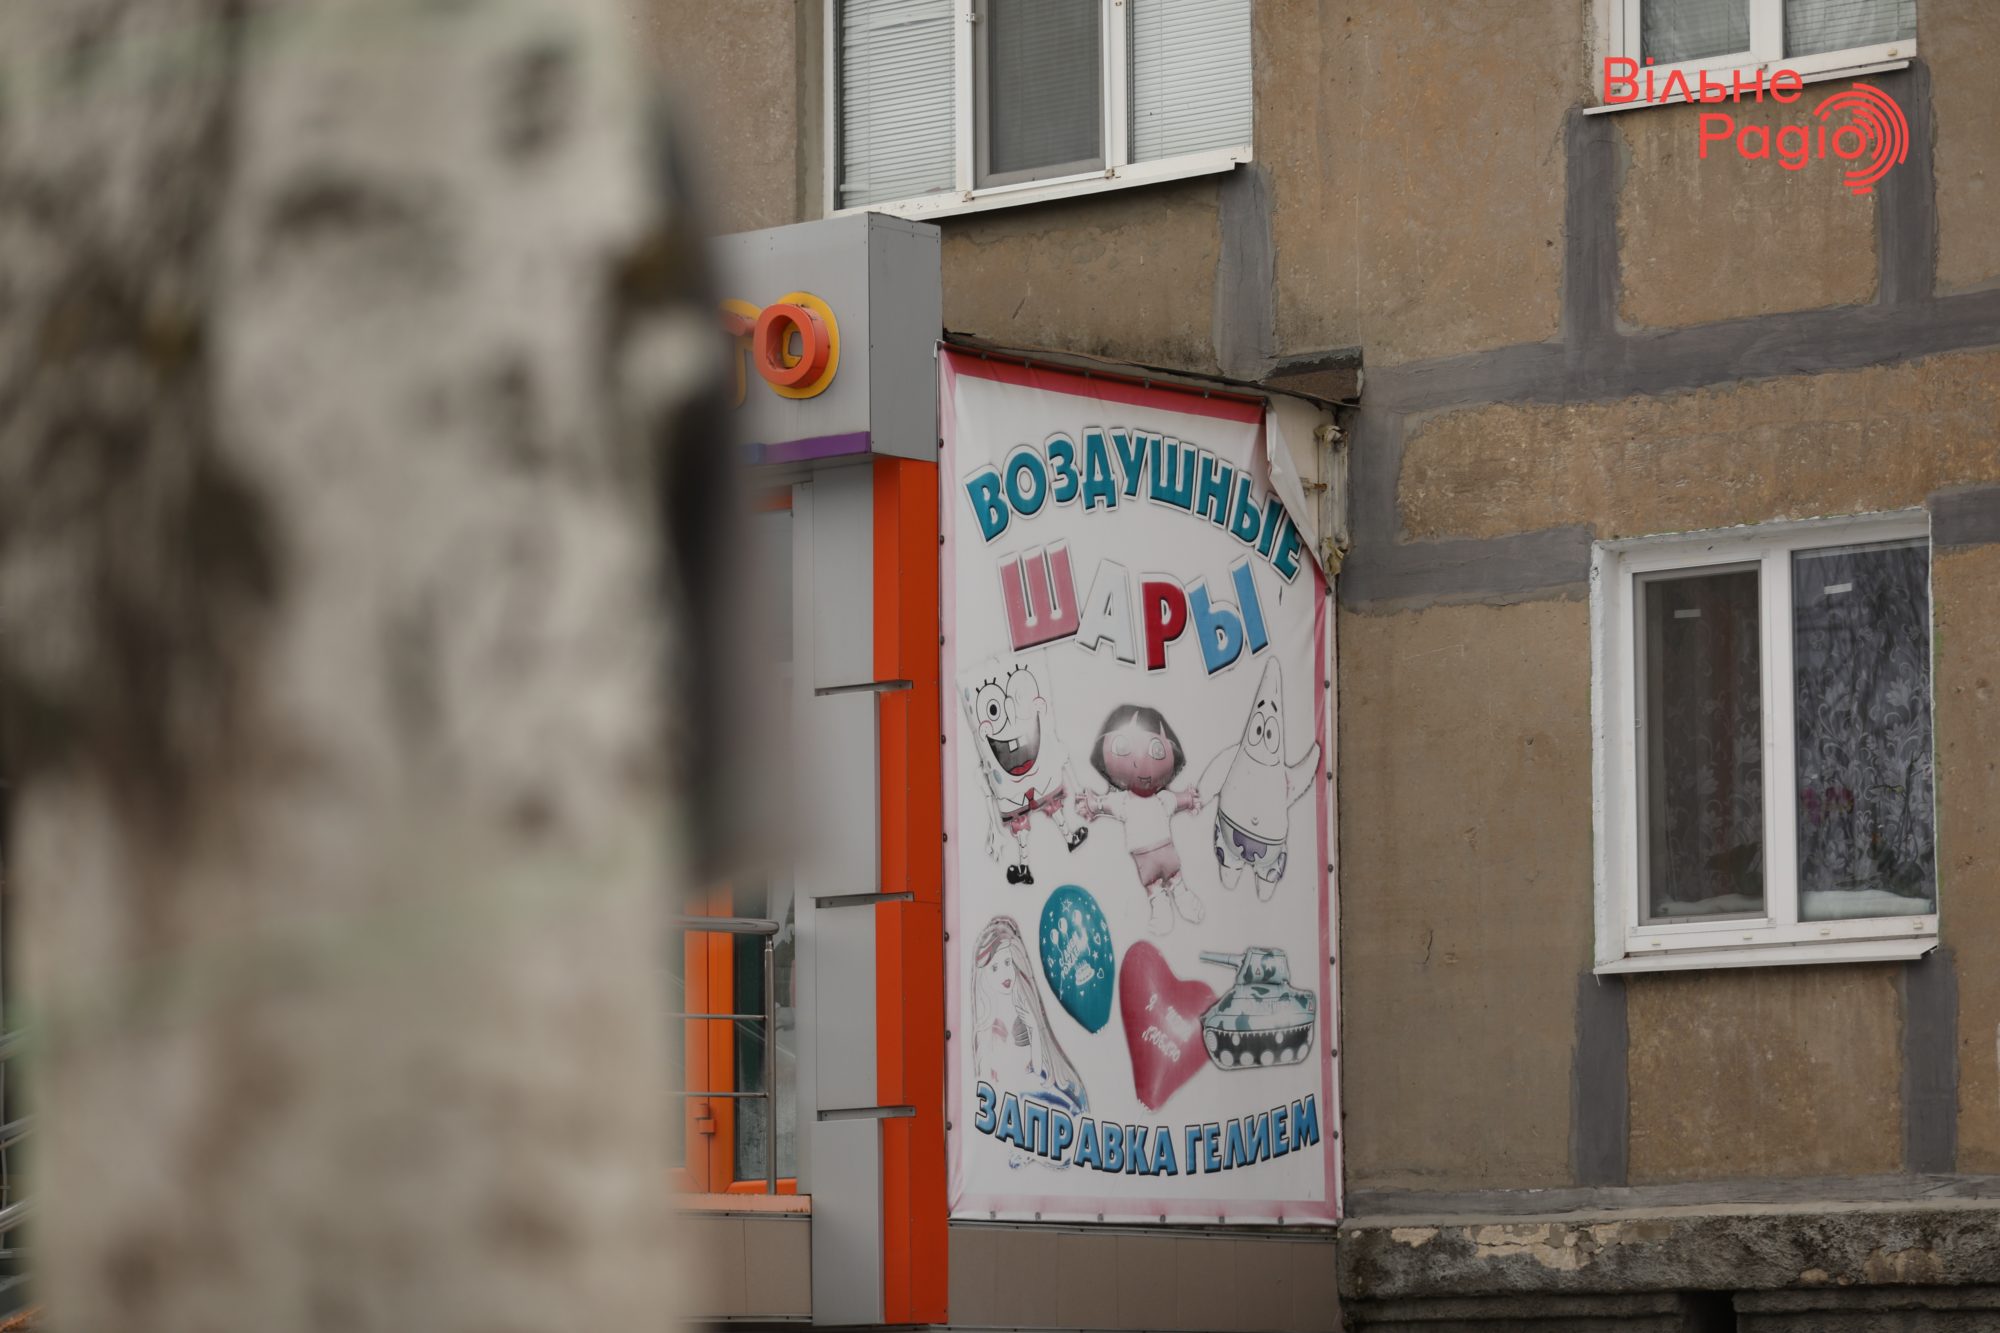 Глав 7 громад Донбасса просят убрать рекламу, которая нарушает “языковой” закон. Какая ситуация в Бахмуте”(ФОТО) 3